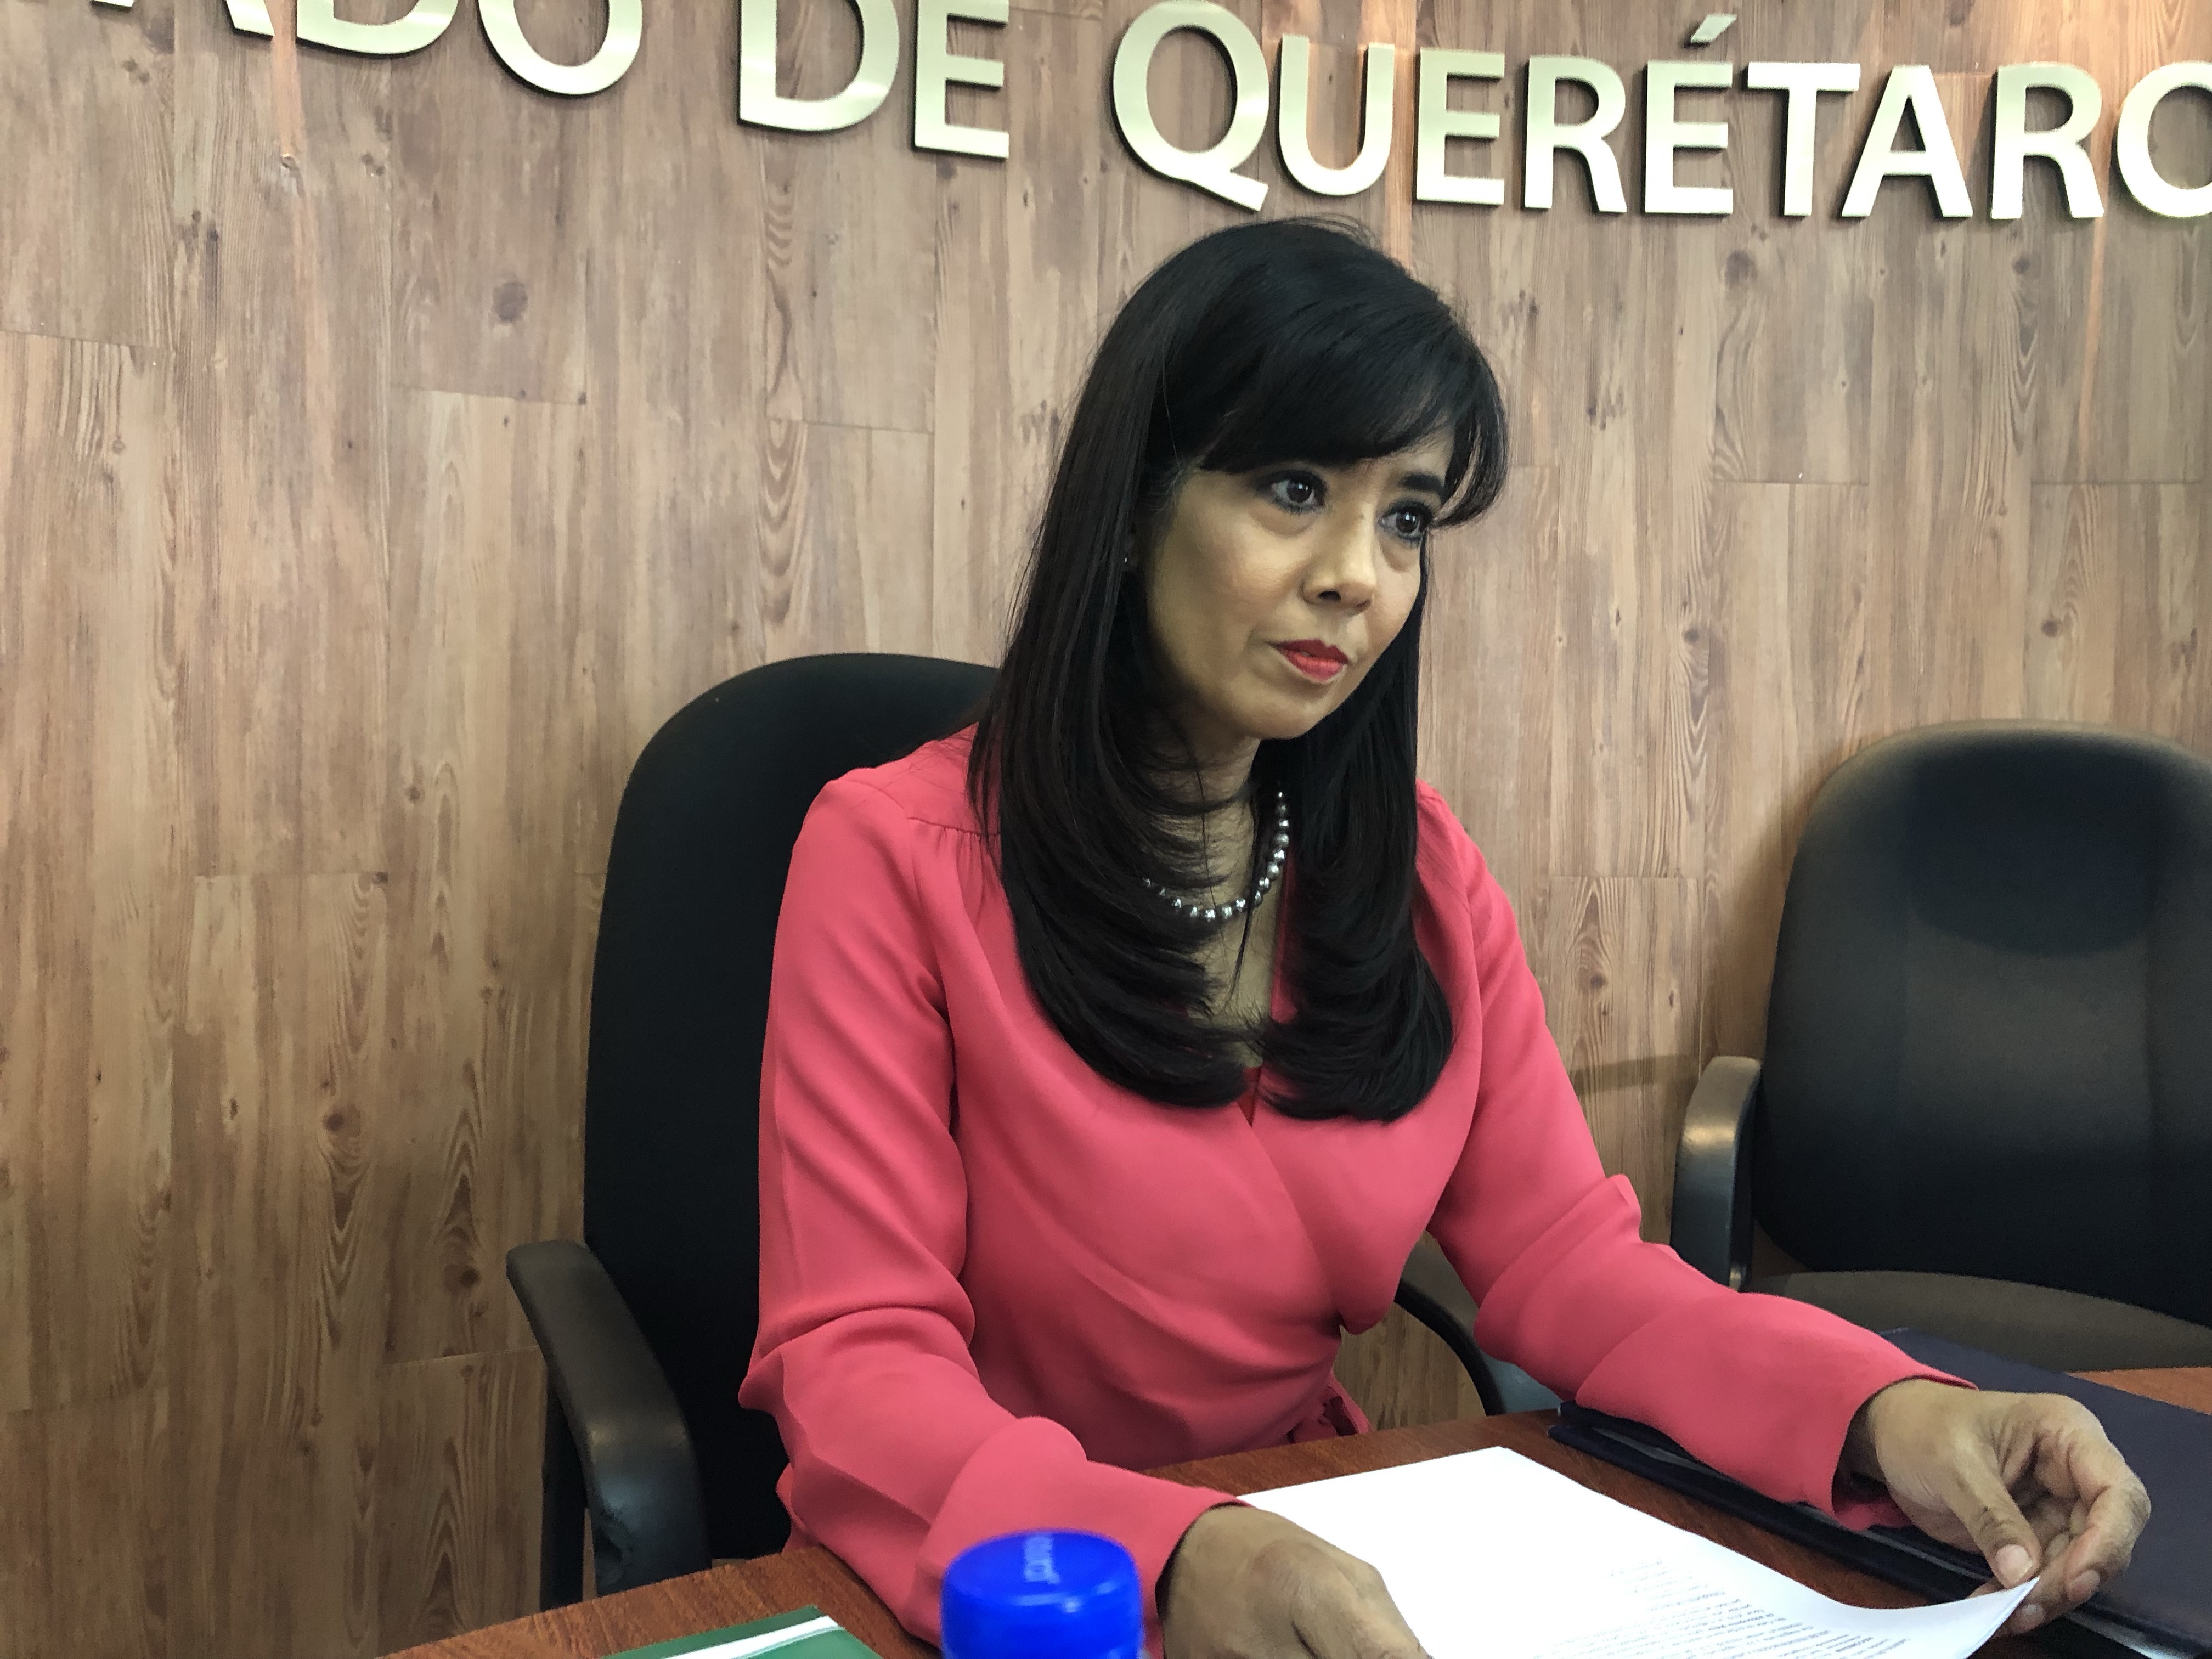  Magistrados de Querétaro buscarán reducir su salario pese a resolución del TEPJF